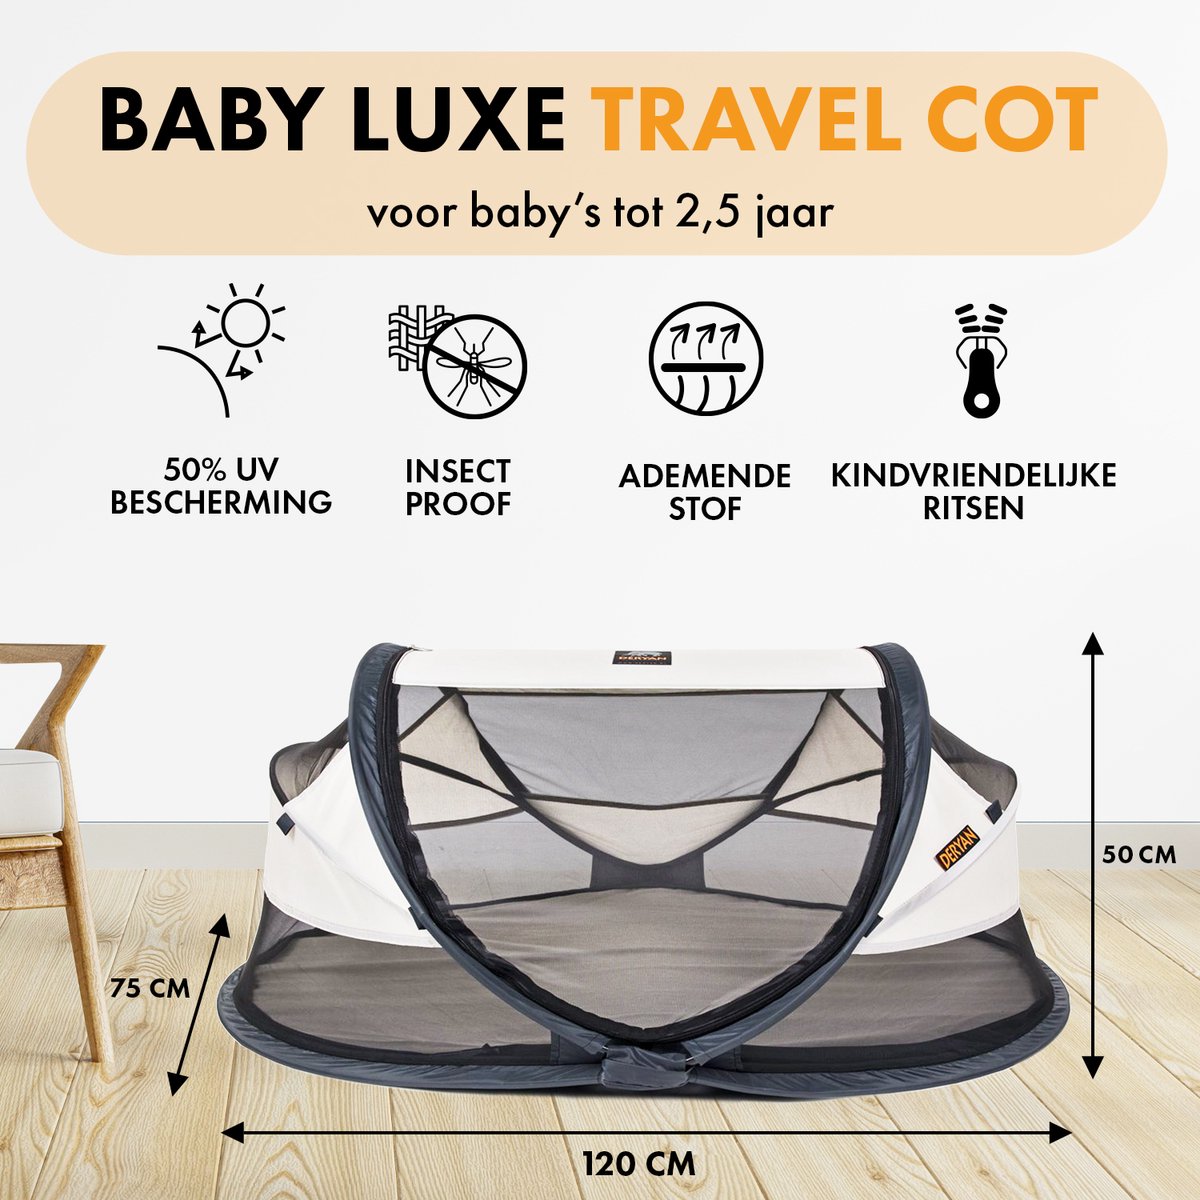 Deryan Baby Luxe campingbedje inclusief zelfopblaasbaar matras